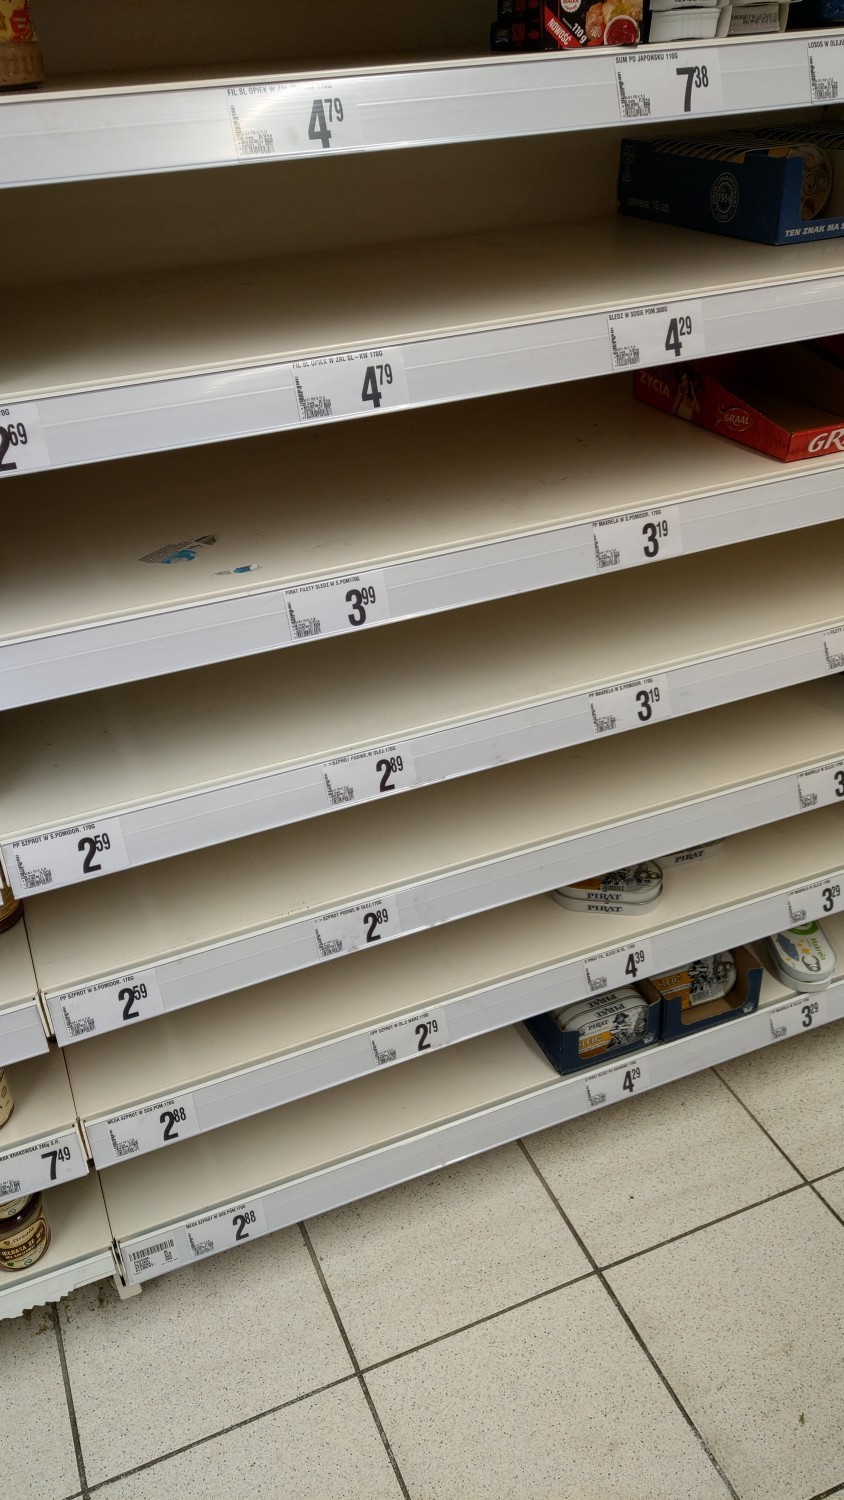 Koronawirus w Warszawie. Pustki w sklepach, ale handlowcy uspokajają: "Produkty wkrótce wrócą na półki"